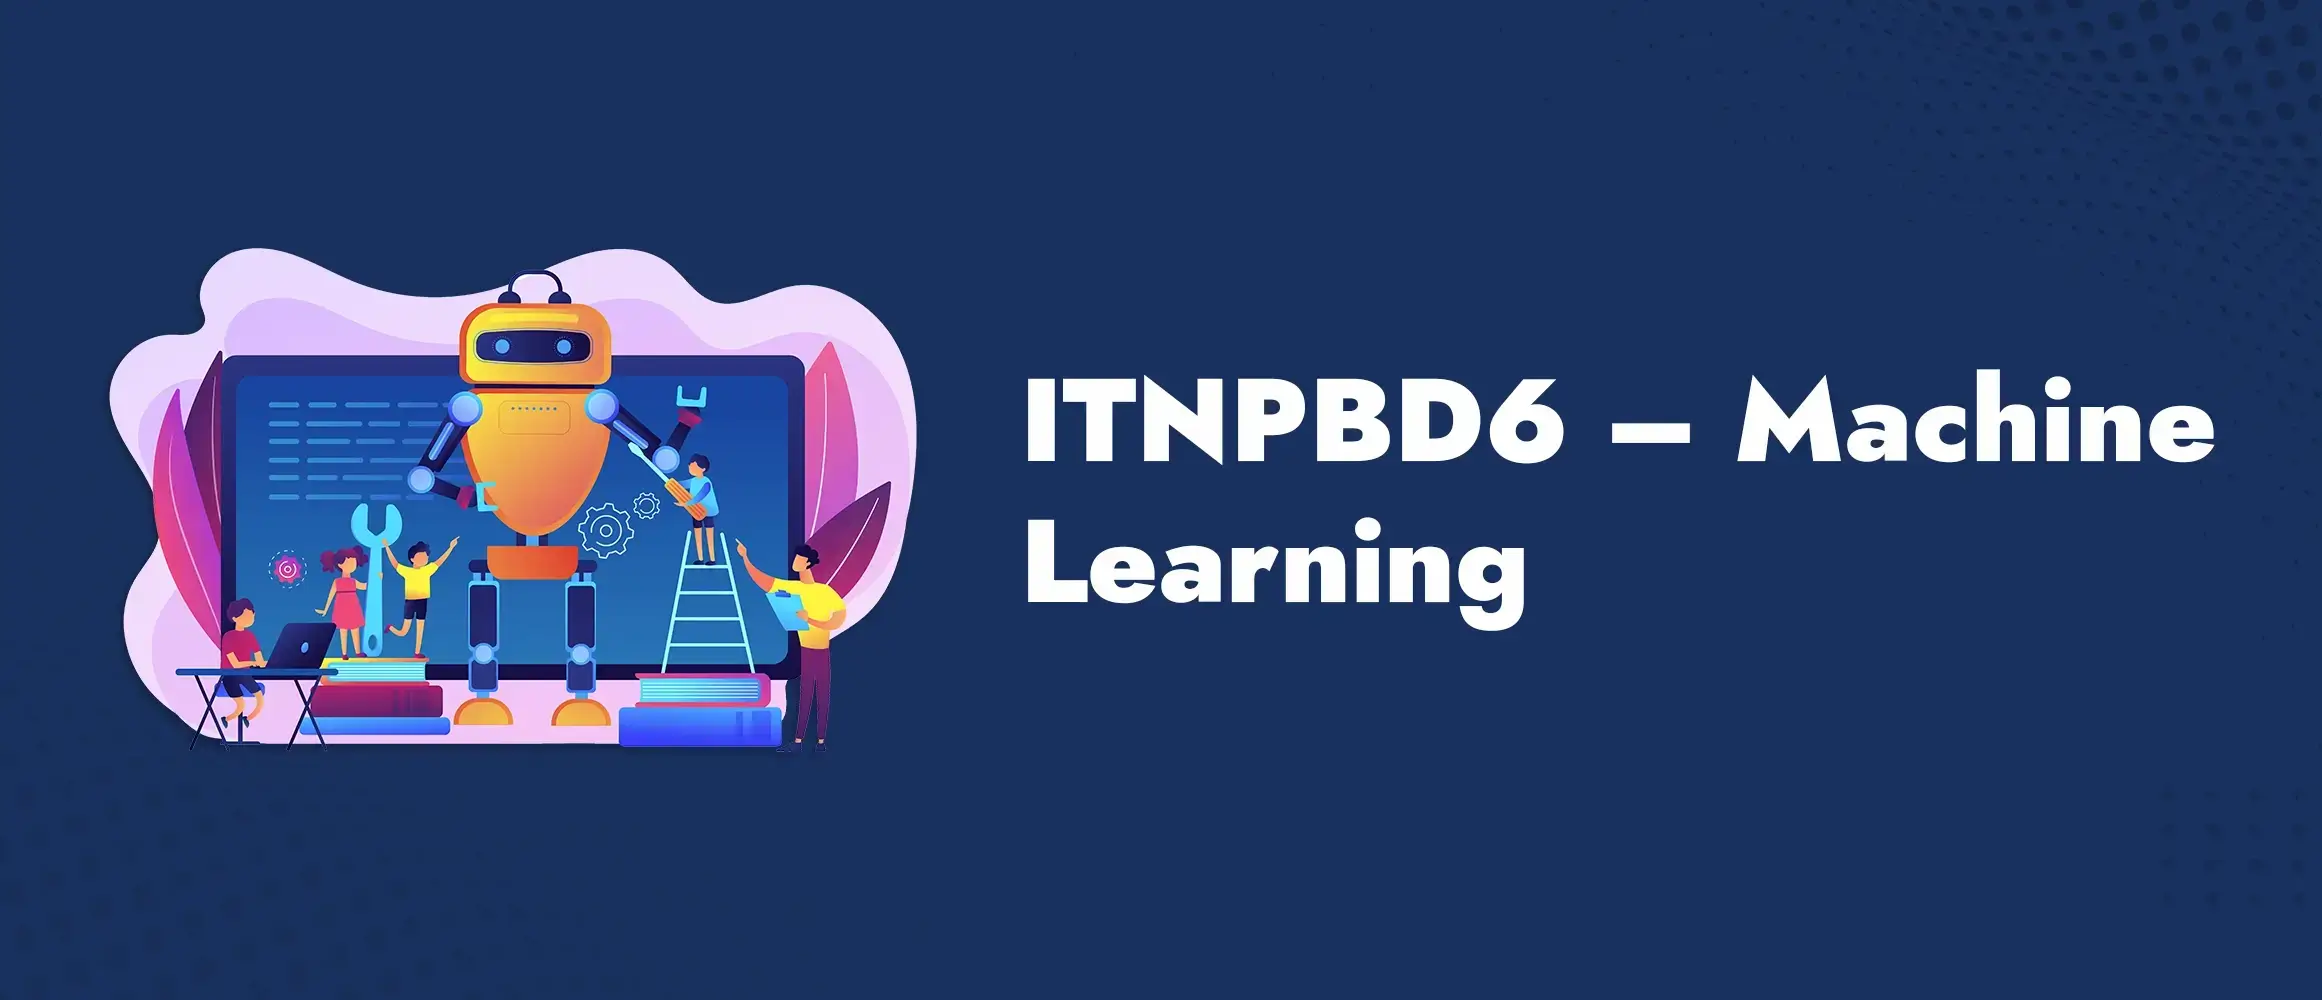 ITNPBD6 Machine Learning